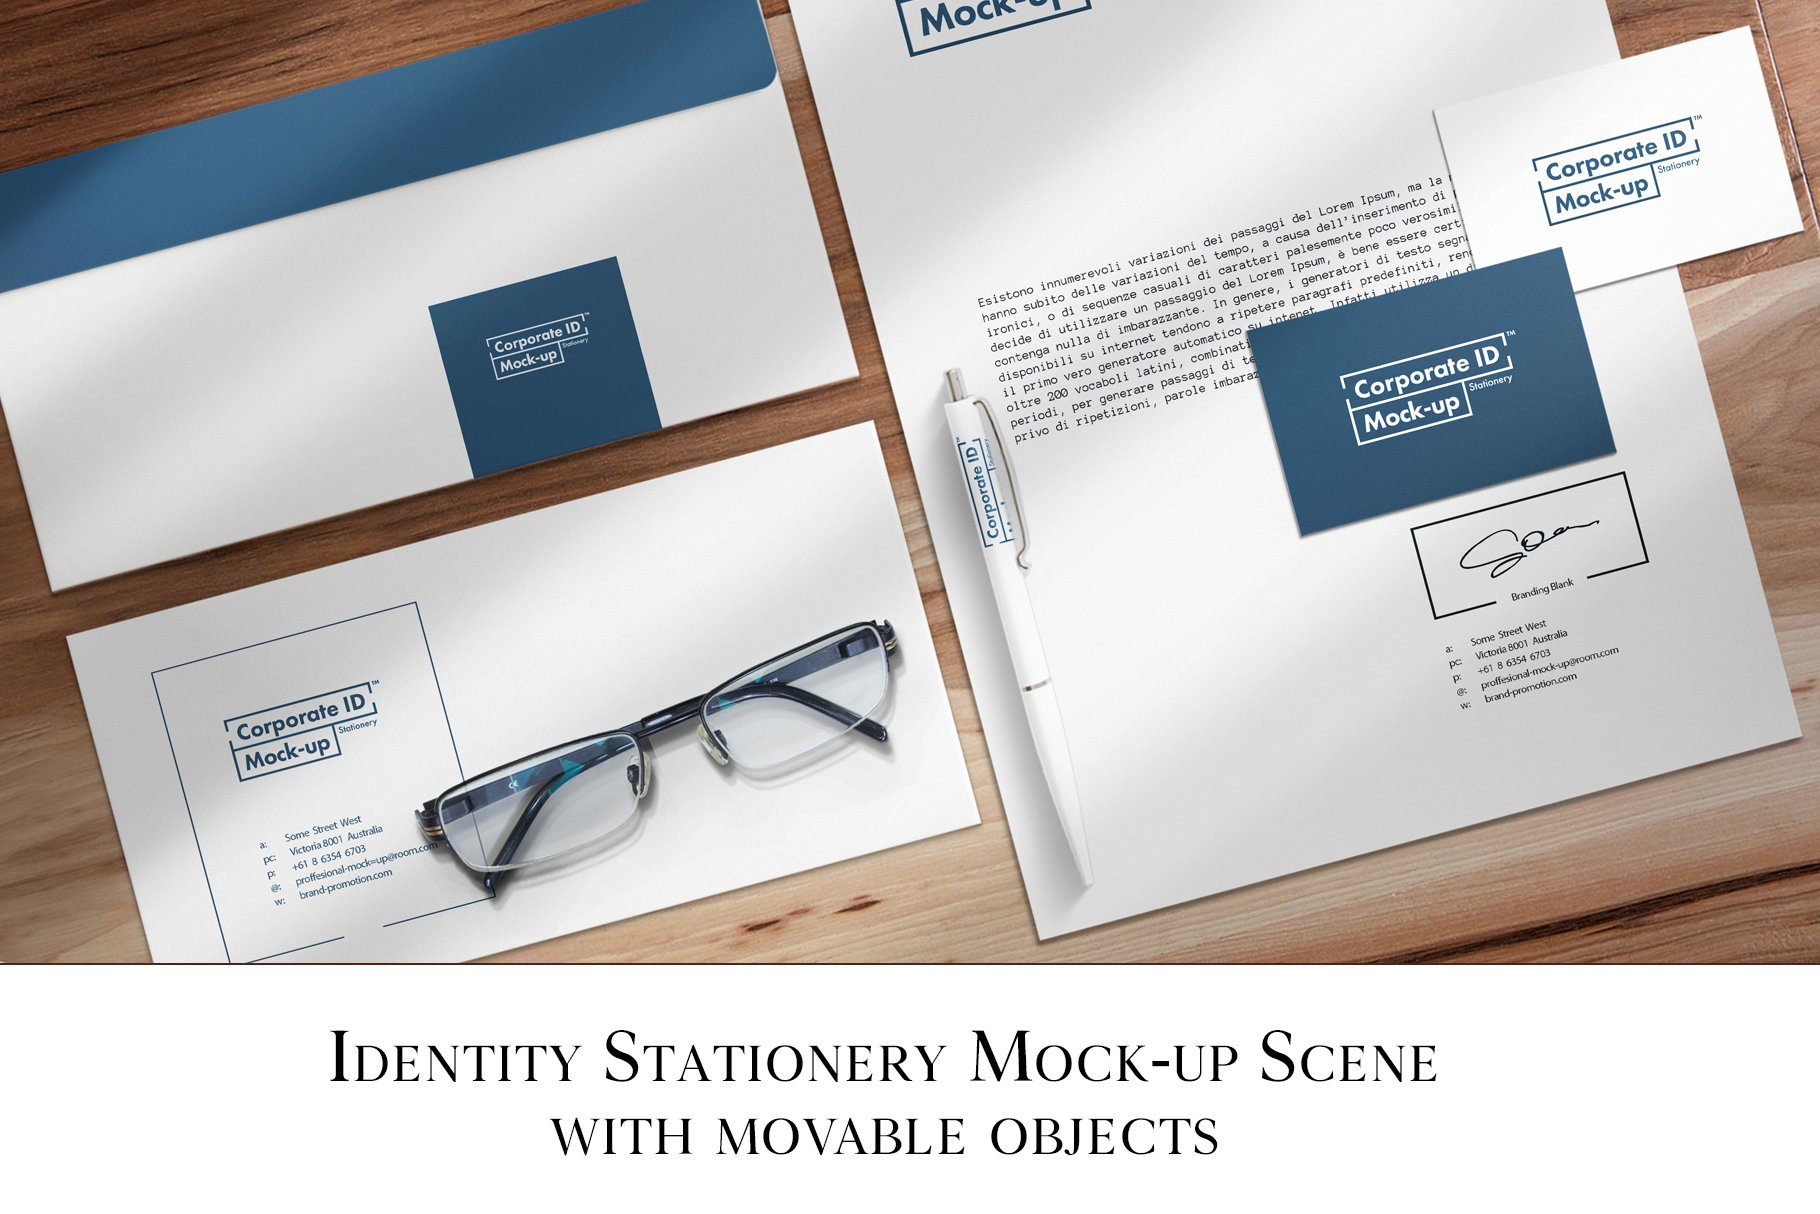 Identity Stationery Mock-up Scene cover image.